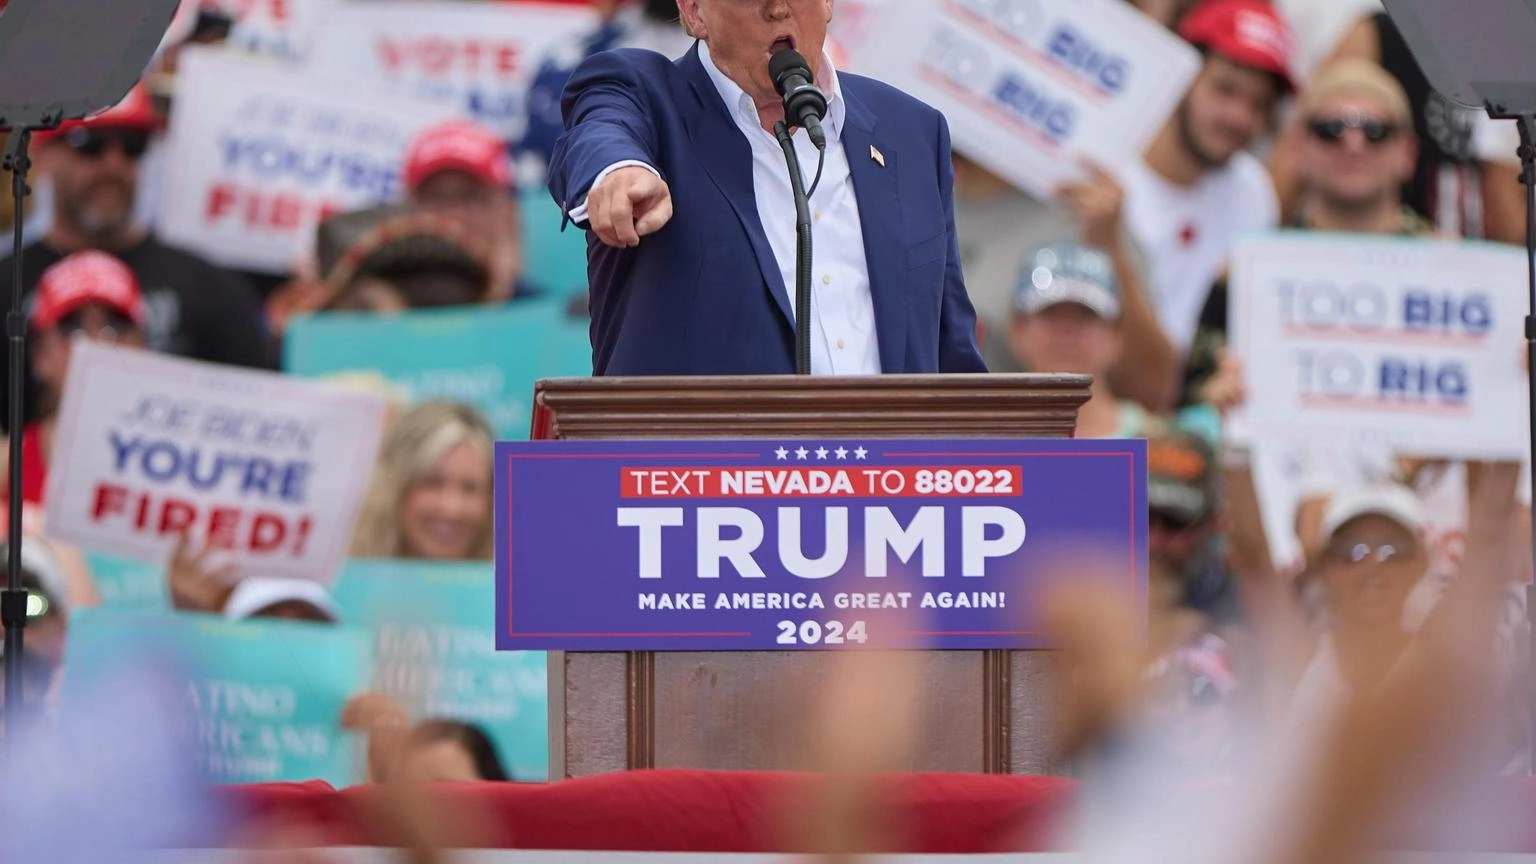 Trump prova a conquistare il Nevada, 'basta tasse sulle mance'